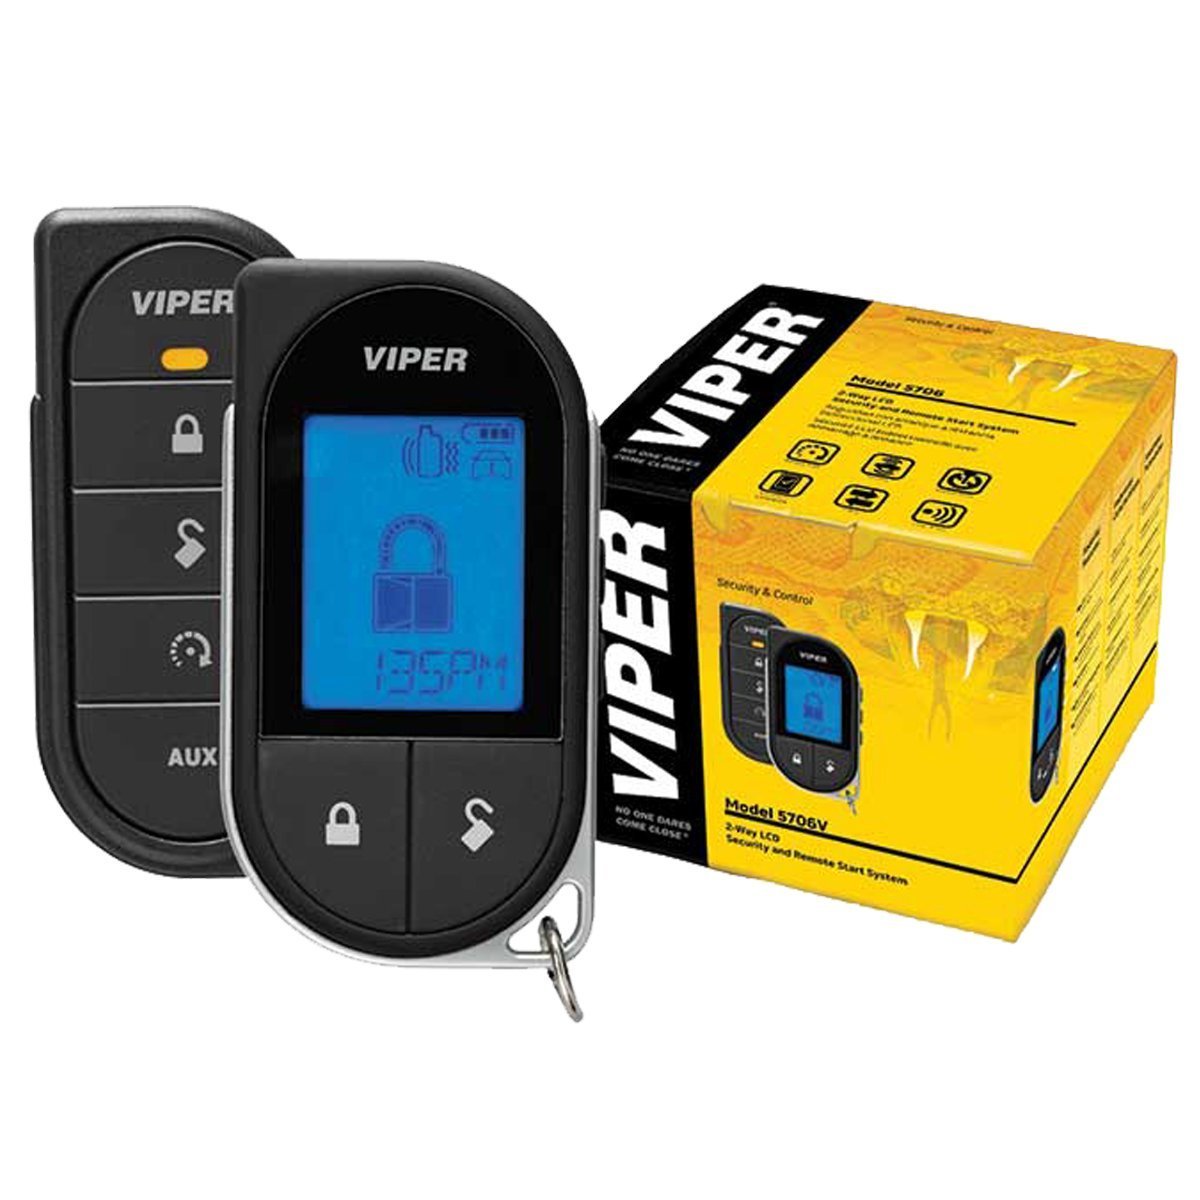 Viper 5706V 2-way car alarm